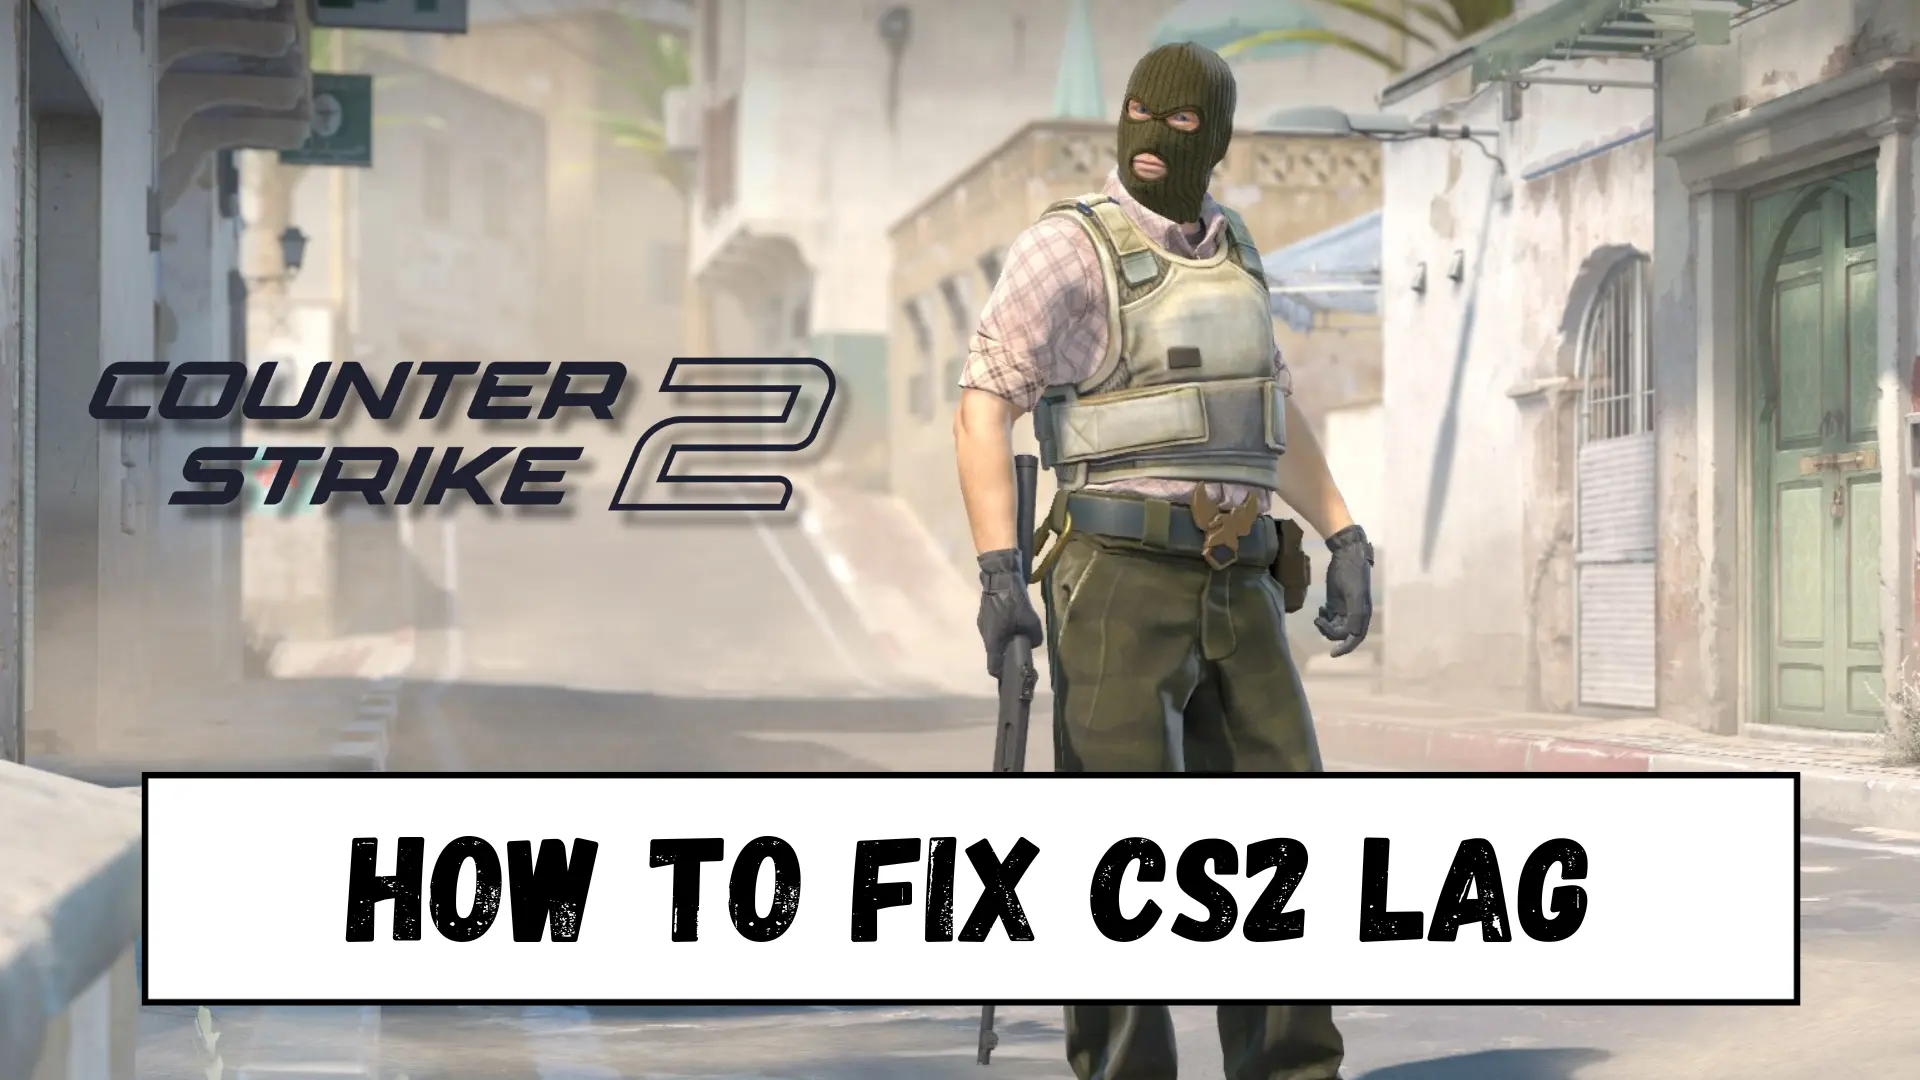 How to Fix CS2 Lag